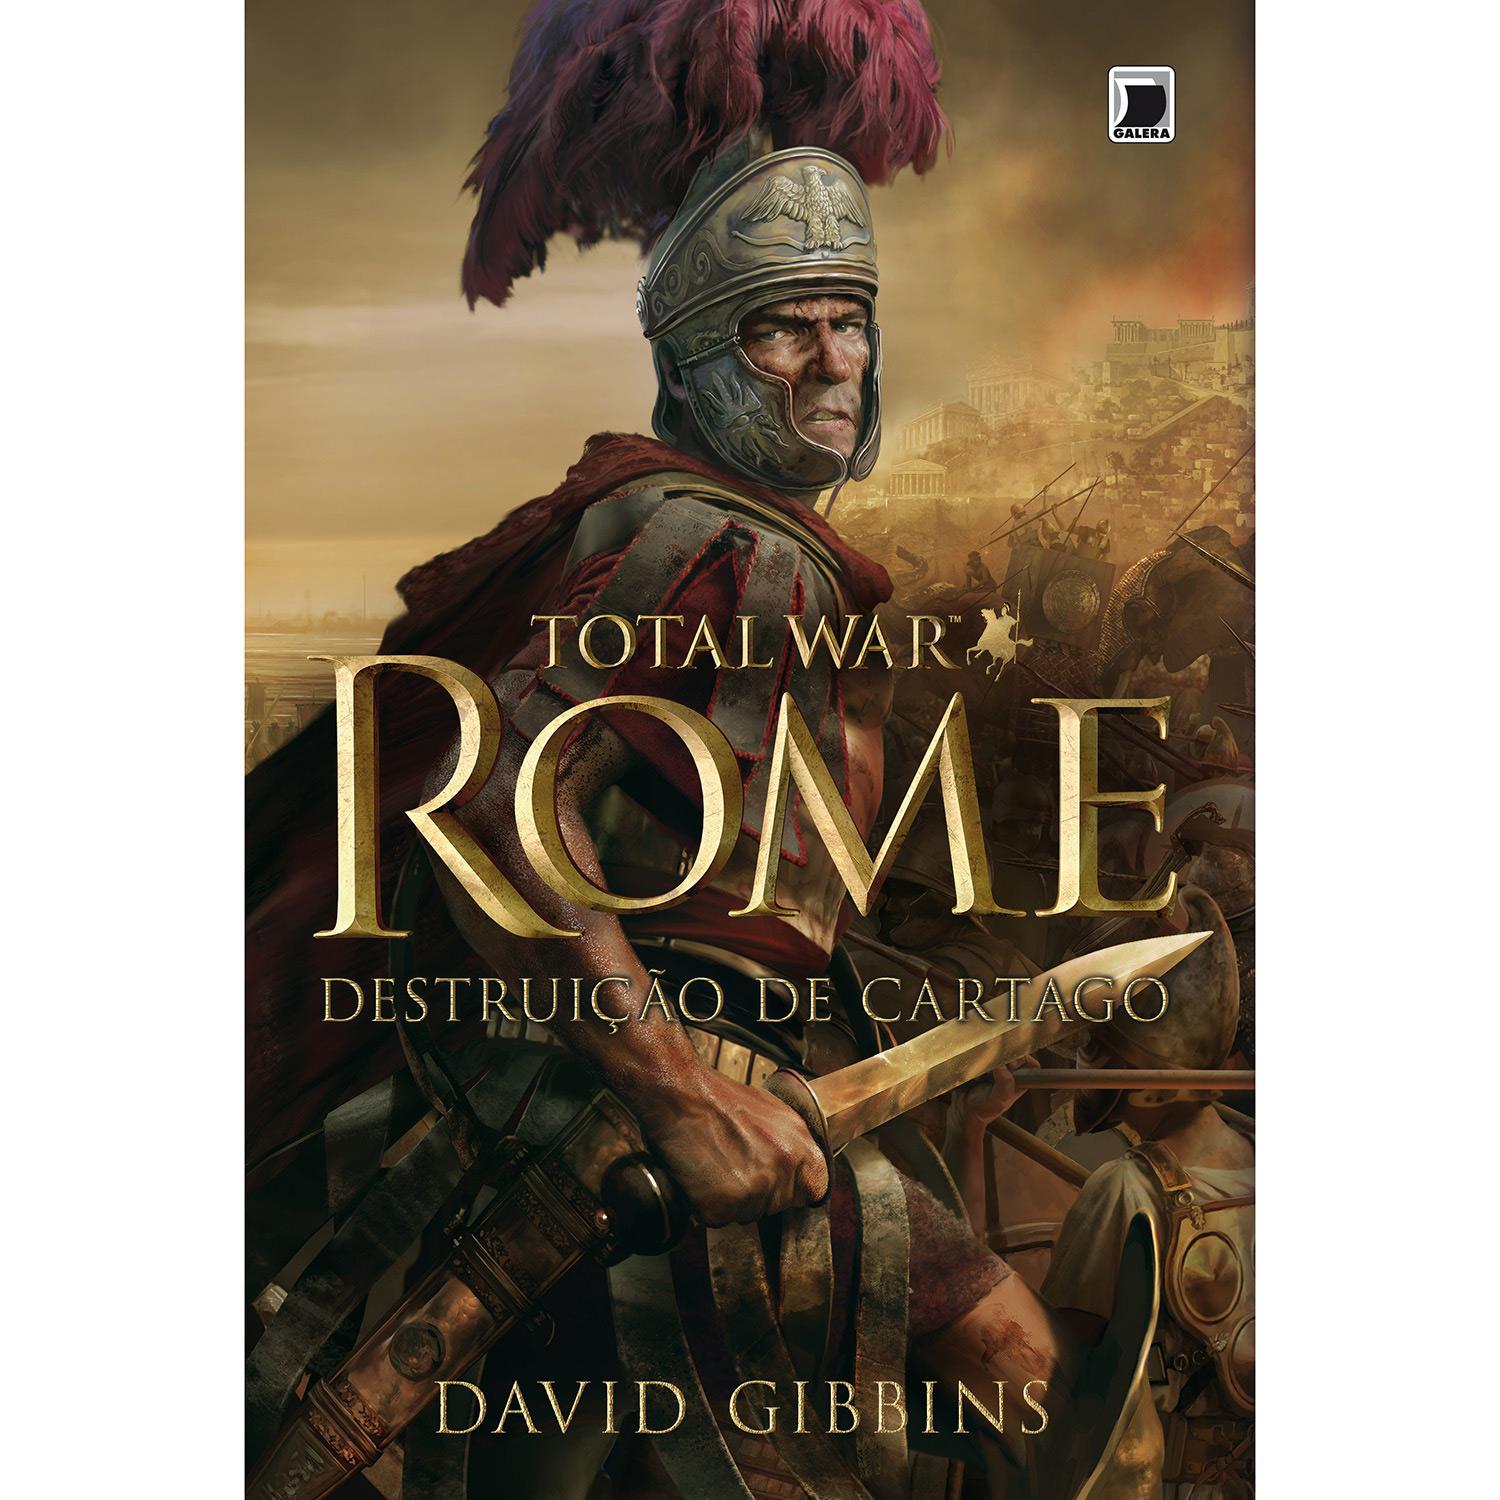 Livro - Total War Rome: Destruição de Cartago é bom? Vale a pena?